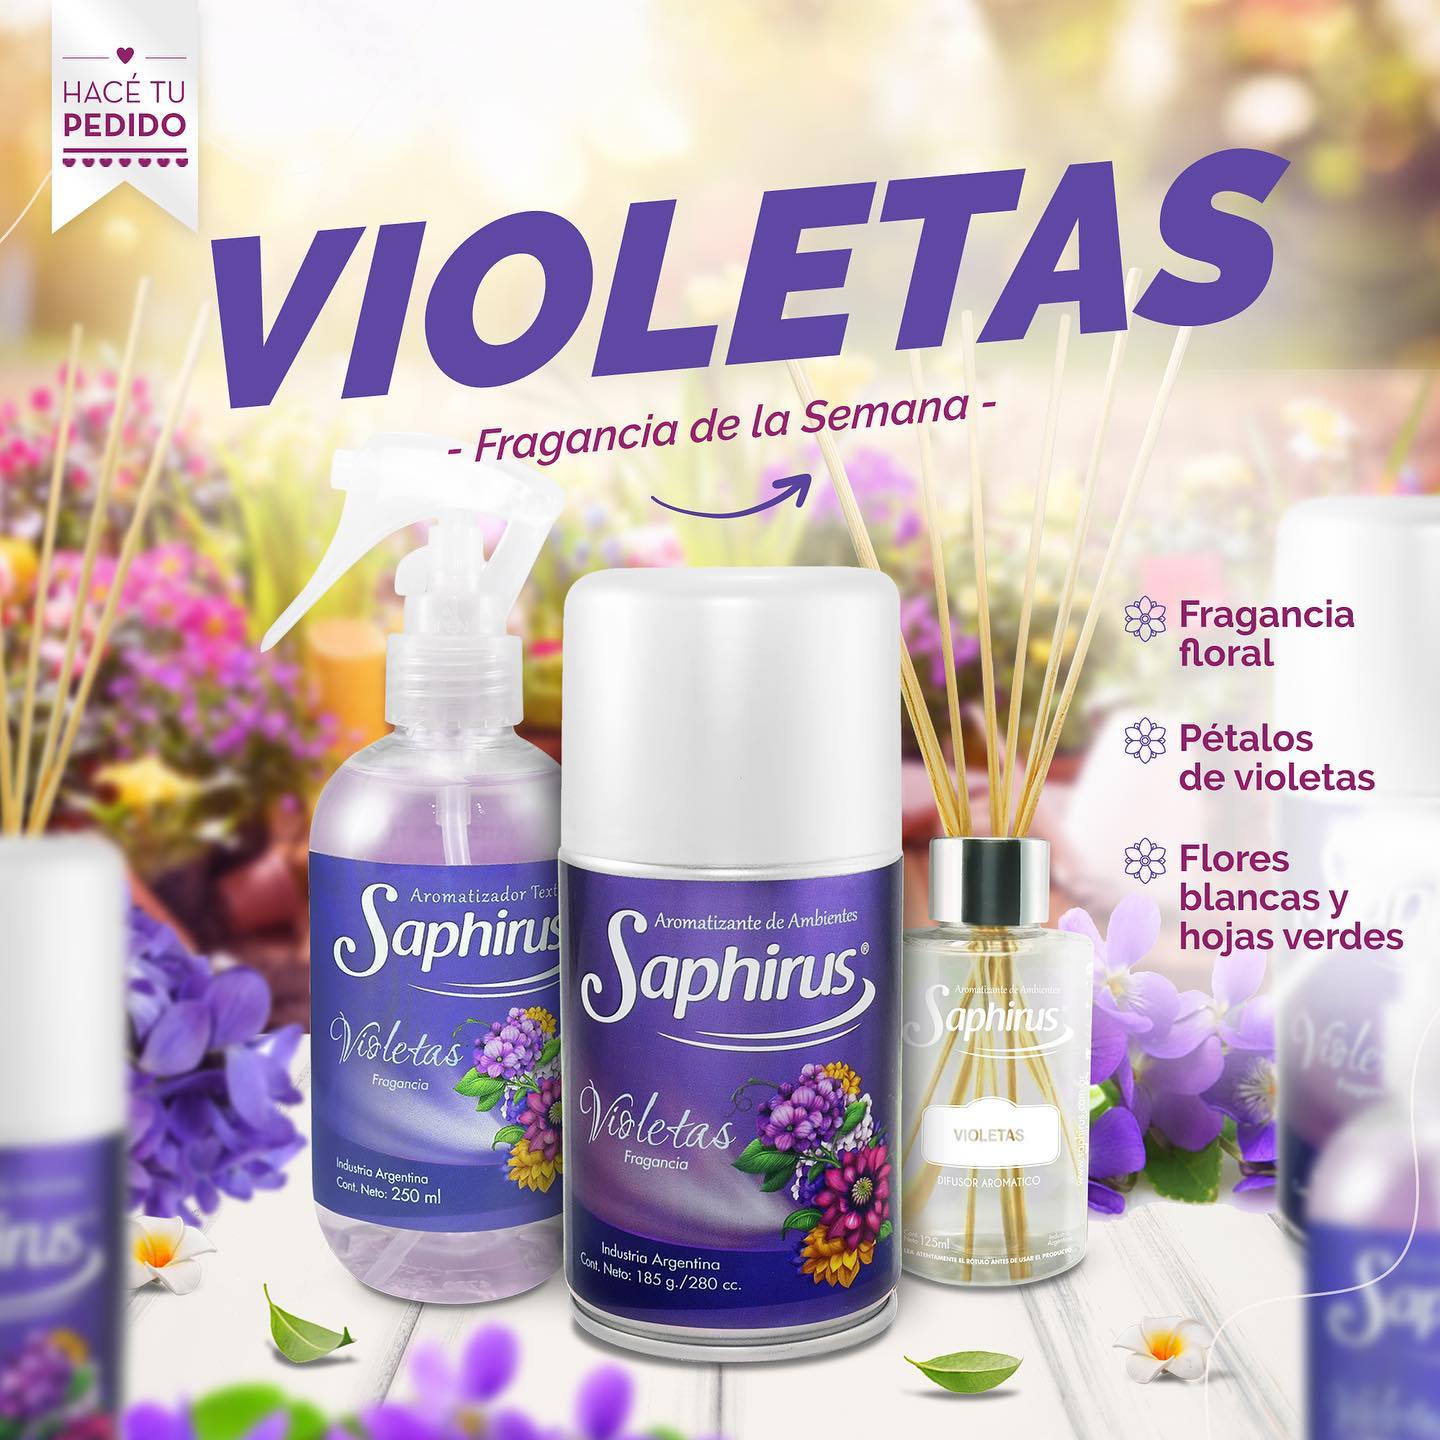 Productos Saphirus fragancia Violetas